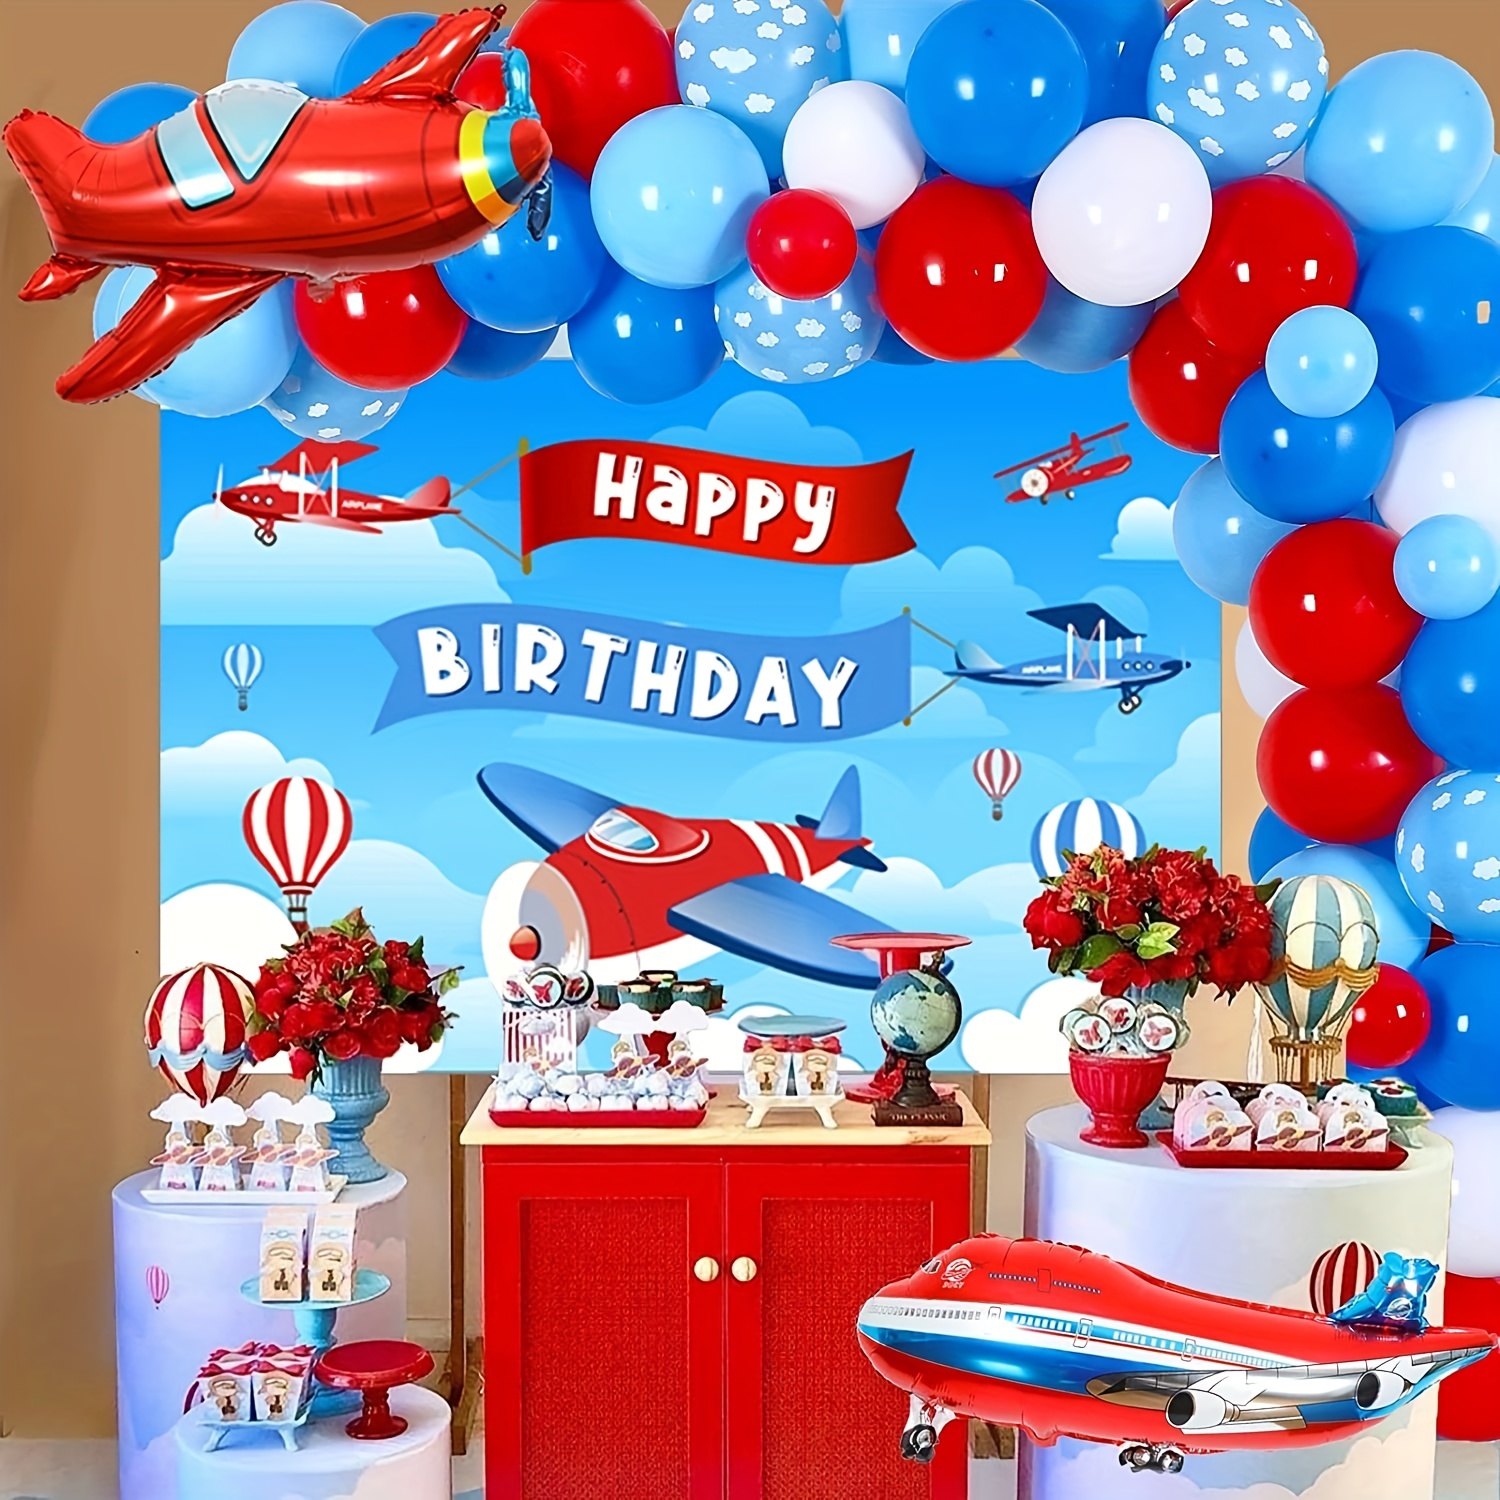  40 decoraciones de fiesta de cumpleaños de fútbol, suministros  de fiesta temática deportiva para niños, incluyendo globos de látex y papel  de aluminio, pancartas de feliz cumpleaños y adornos para tartas 